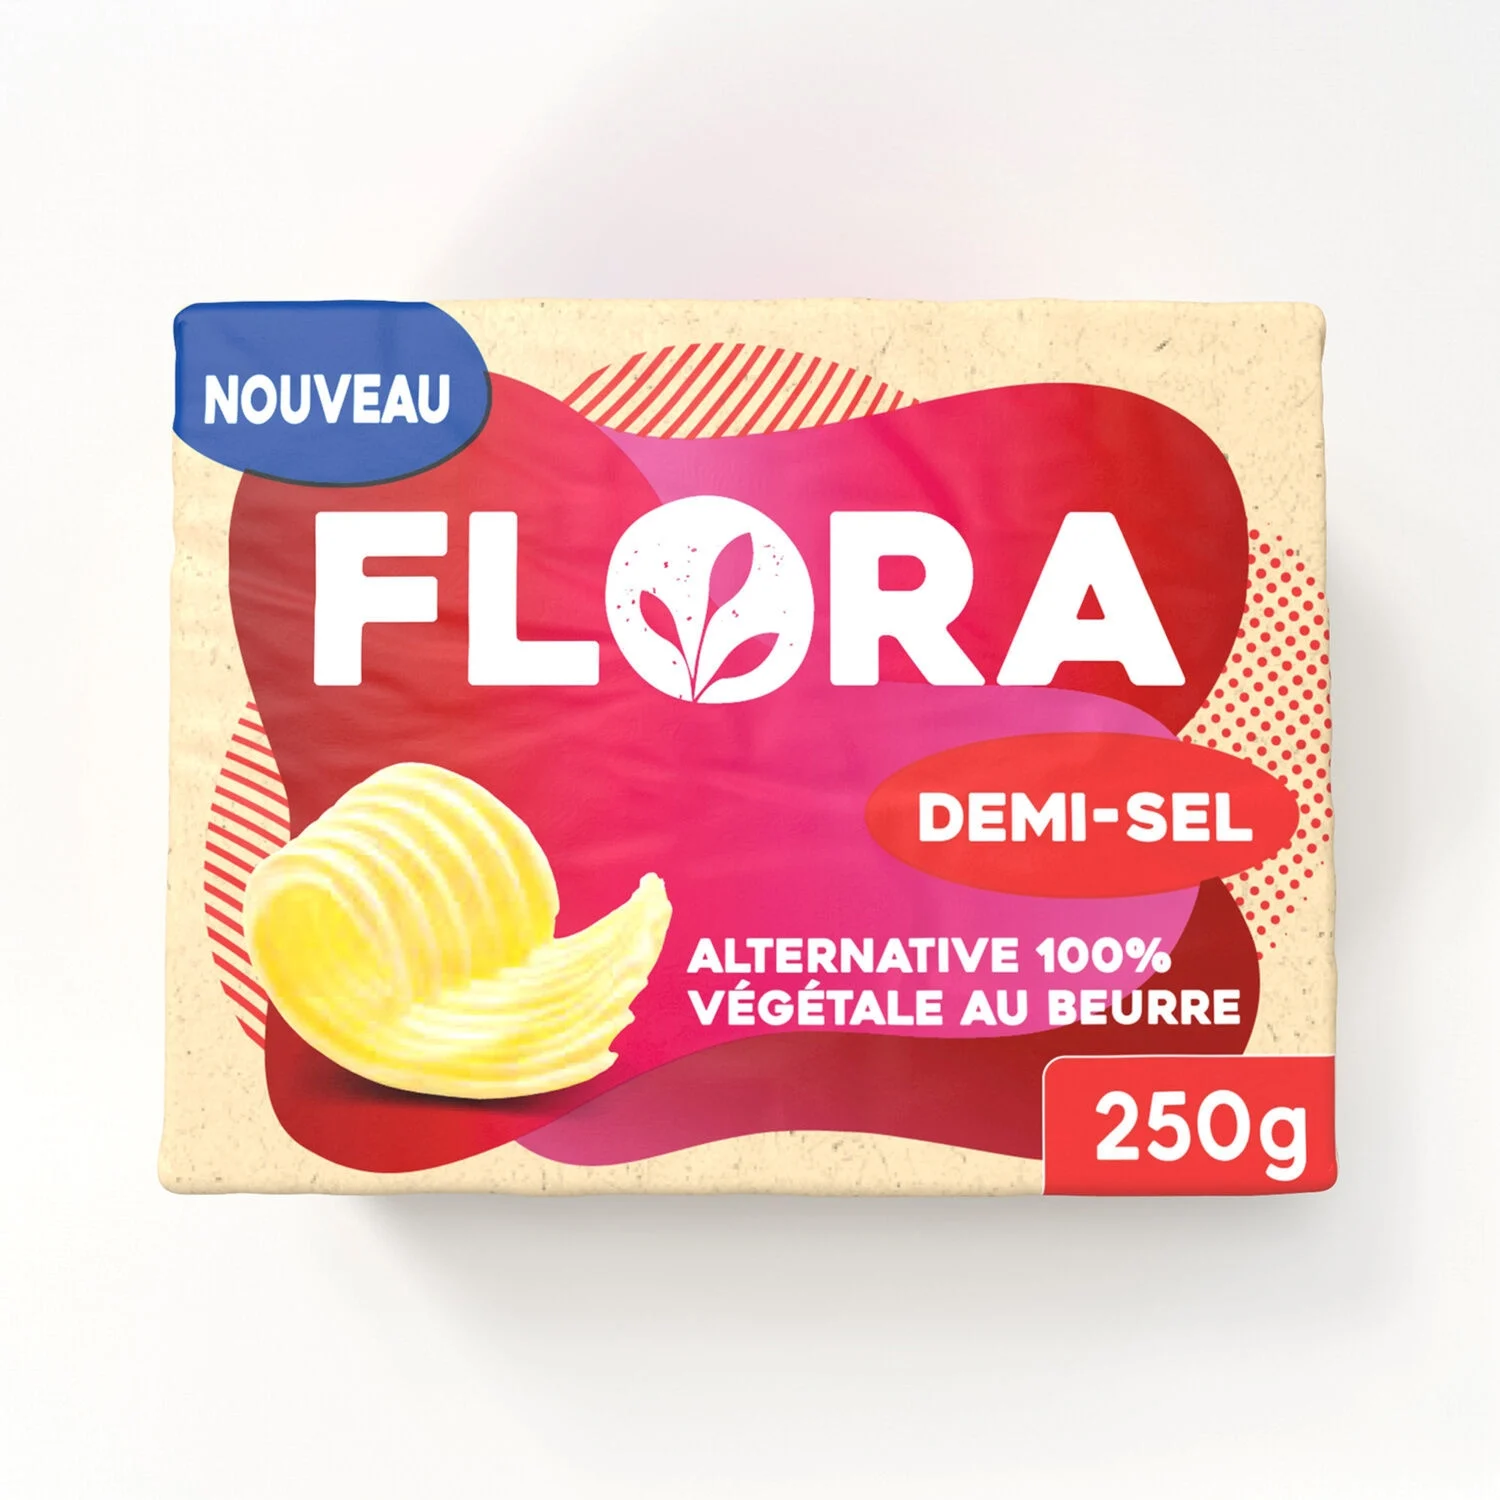 Alternative 100% Végétale Au Beurre Demi-sel 250g - Flora